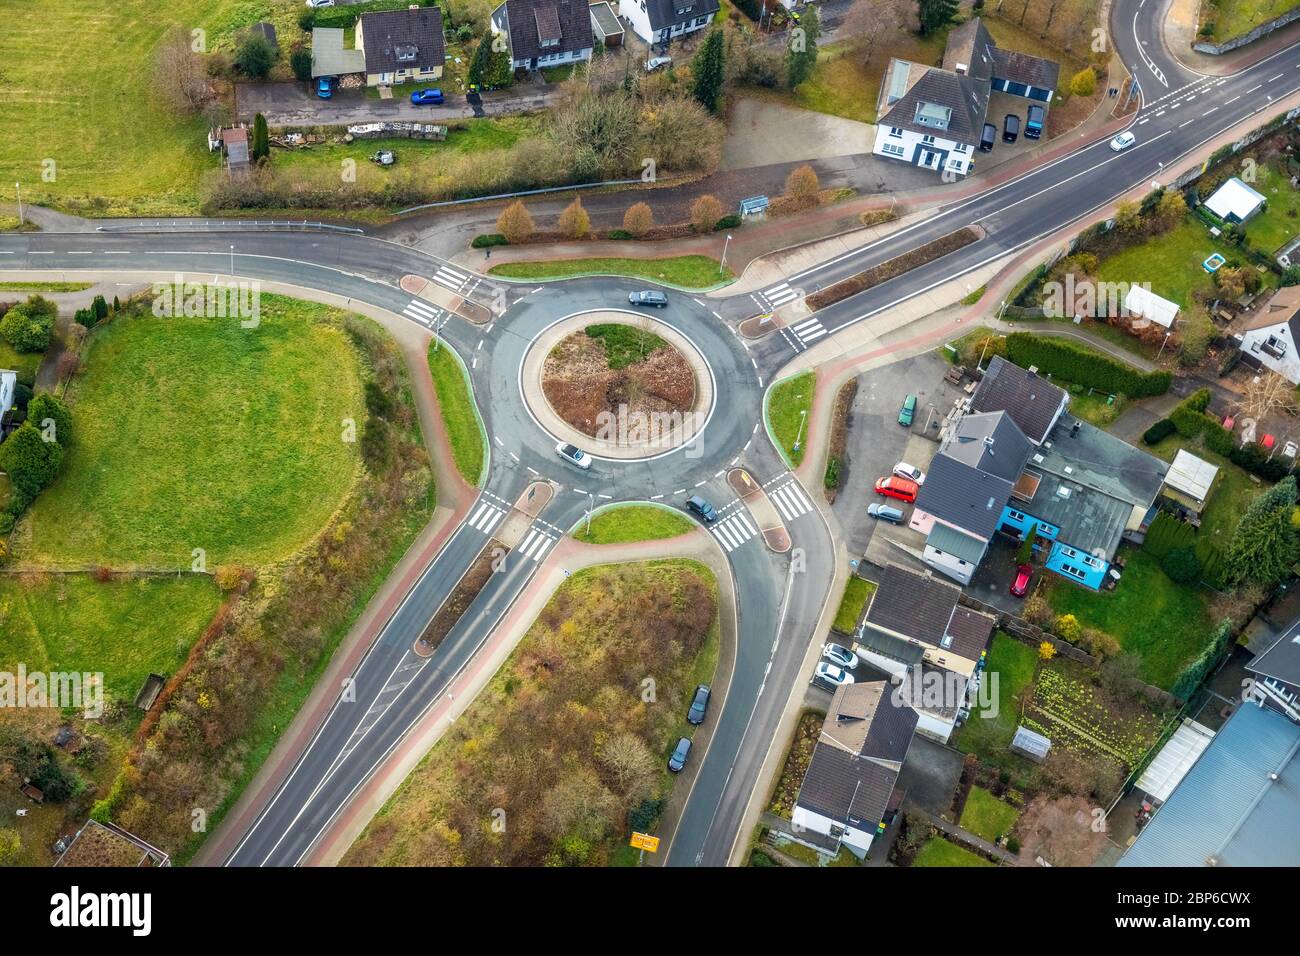 Vista aérea, rotonda Marienheider Straße / Landstraße L 323 / Derschlager Straße / Fumberg, Meinerzhagen, Sauerland, Märkischer Kreis, Renania del Norte-Westfalia, Alemania Foto de stock